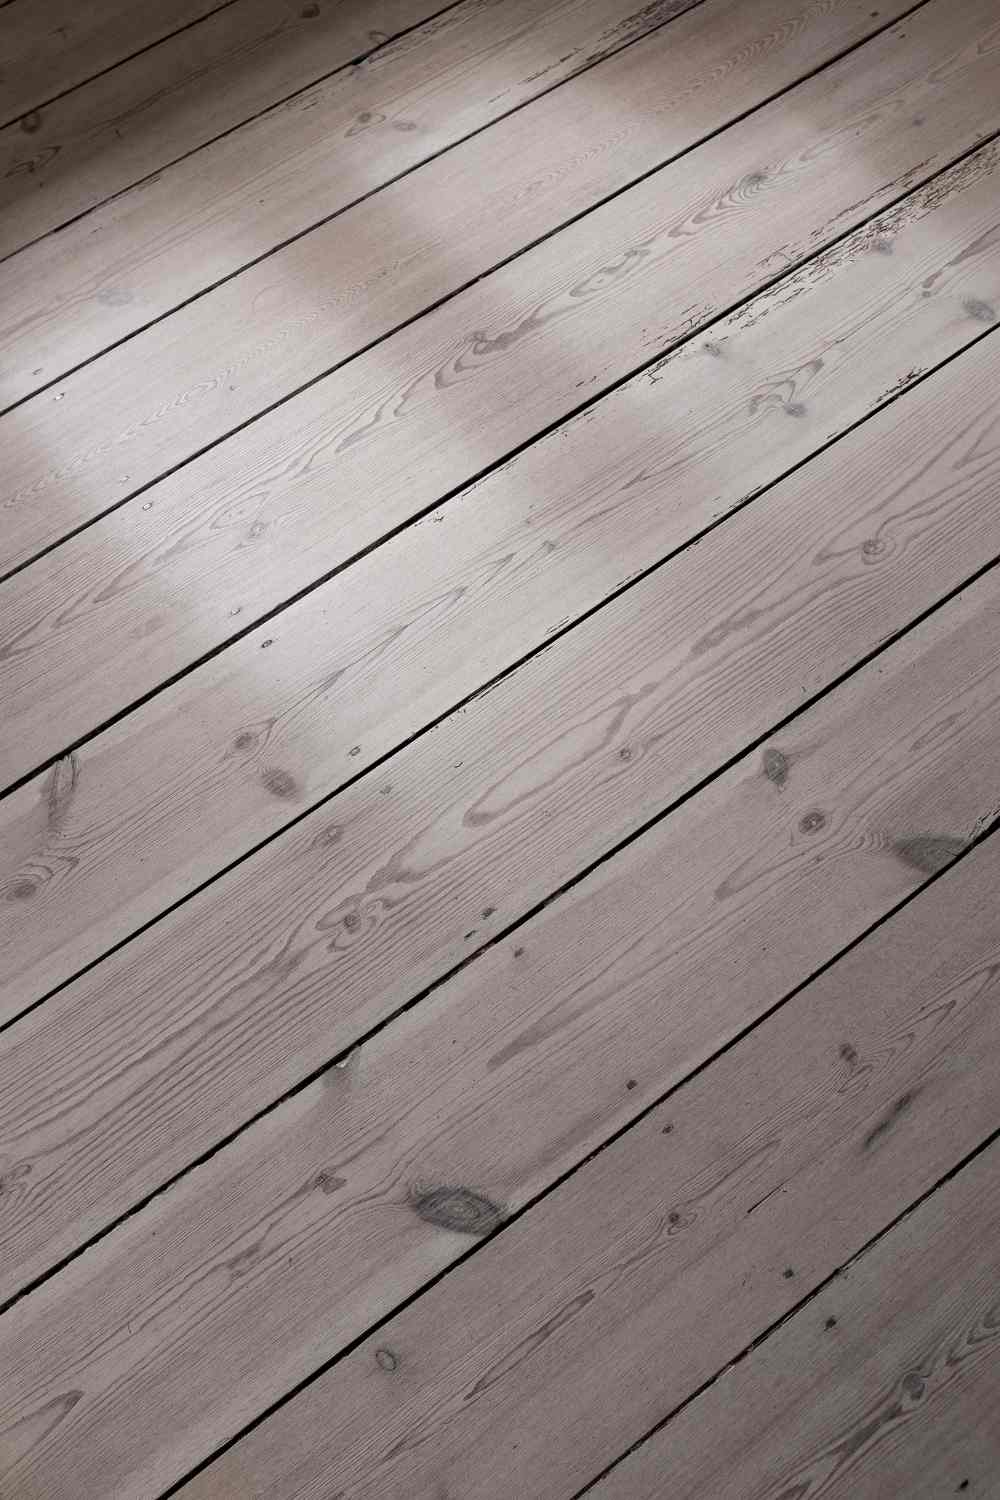 Reclaimed Wood Flooring